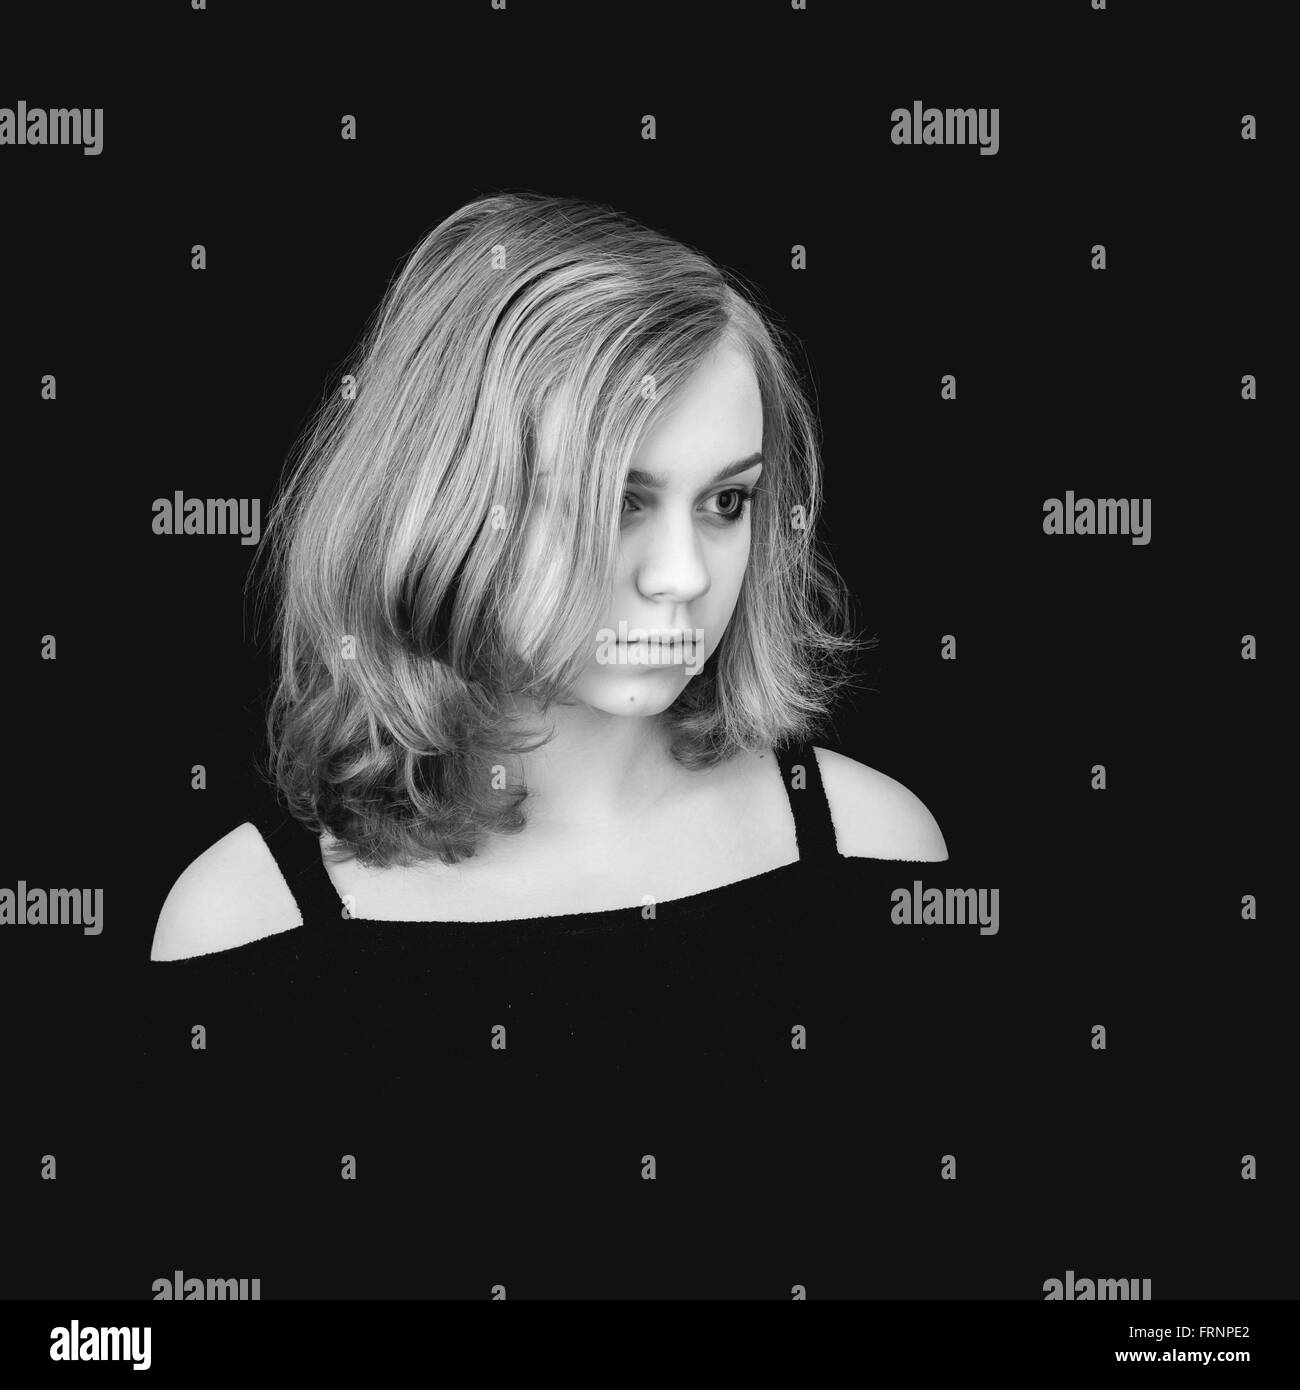 Schwarz / weiß Porträt der schönen Teenager kaukasischen blonde Mädchen auf schwarzem Hintergrund Stockfoto